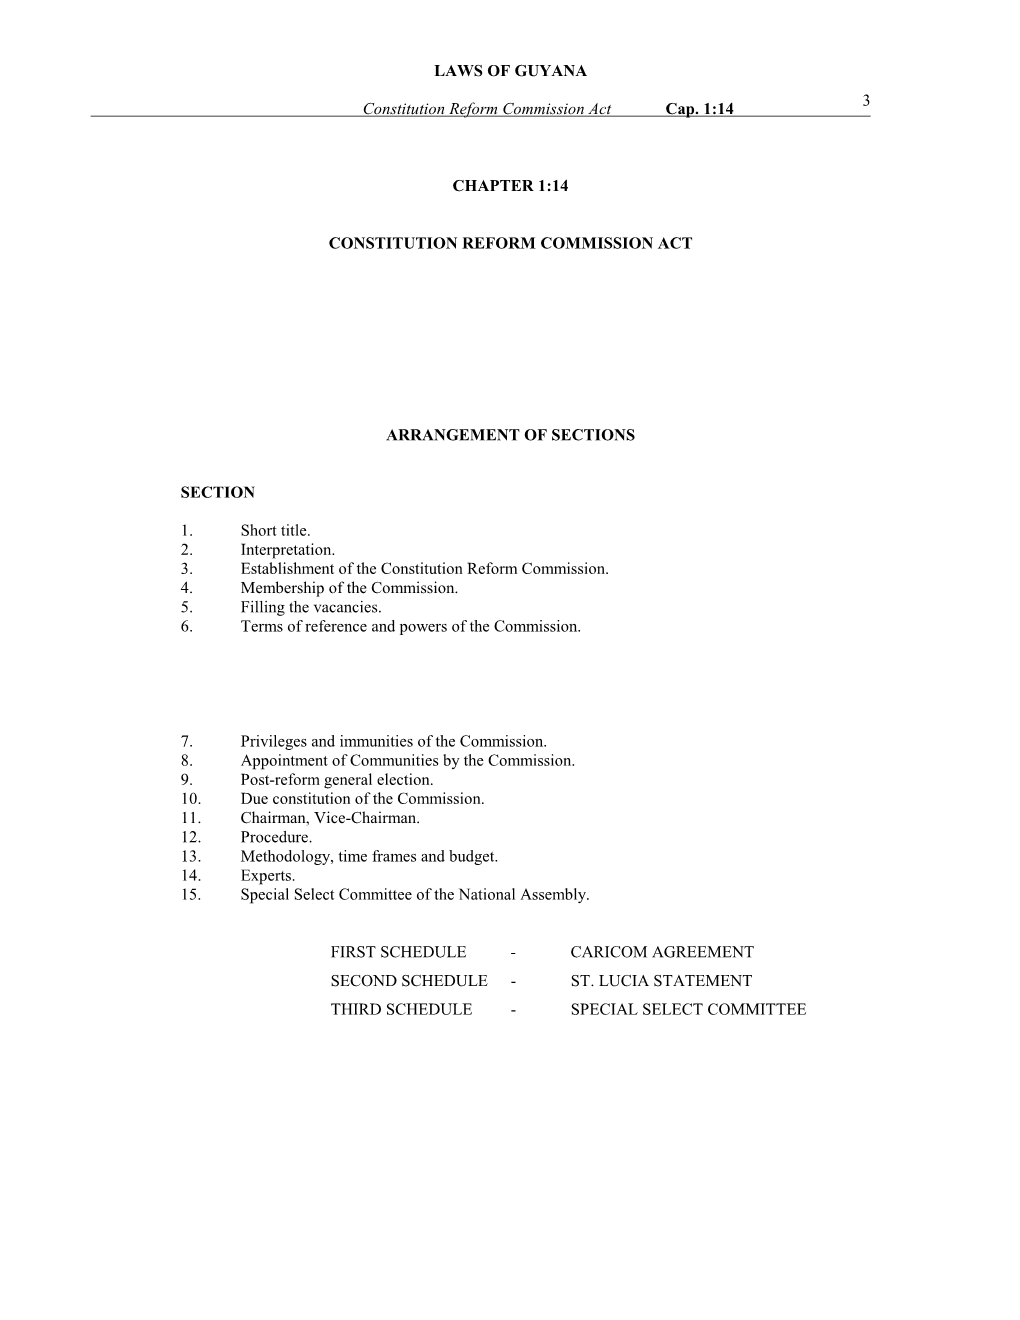 Constitution Reform Commission Act Cap. 1:14